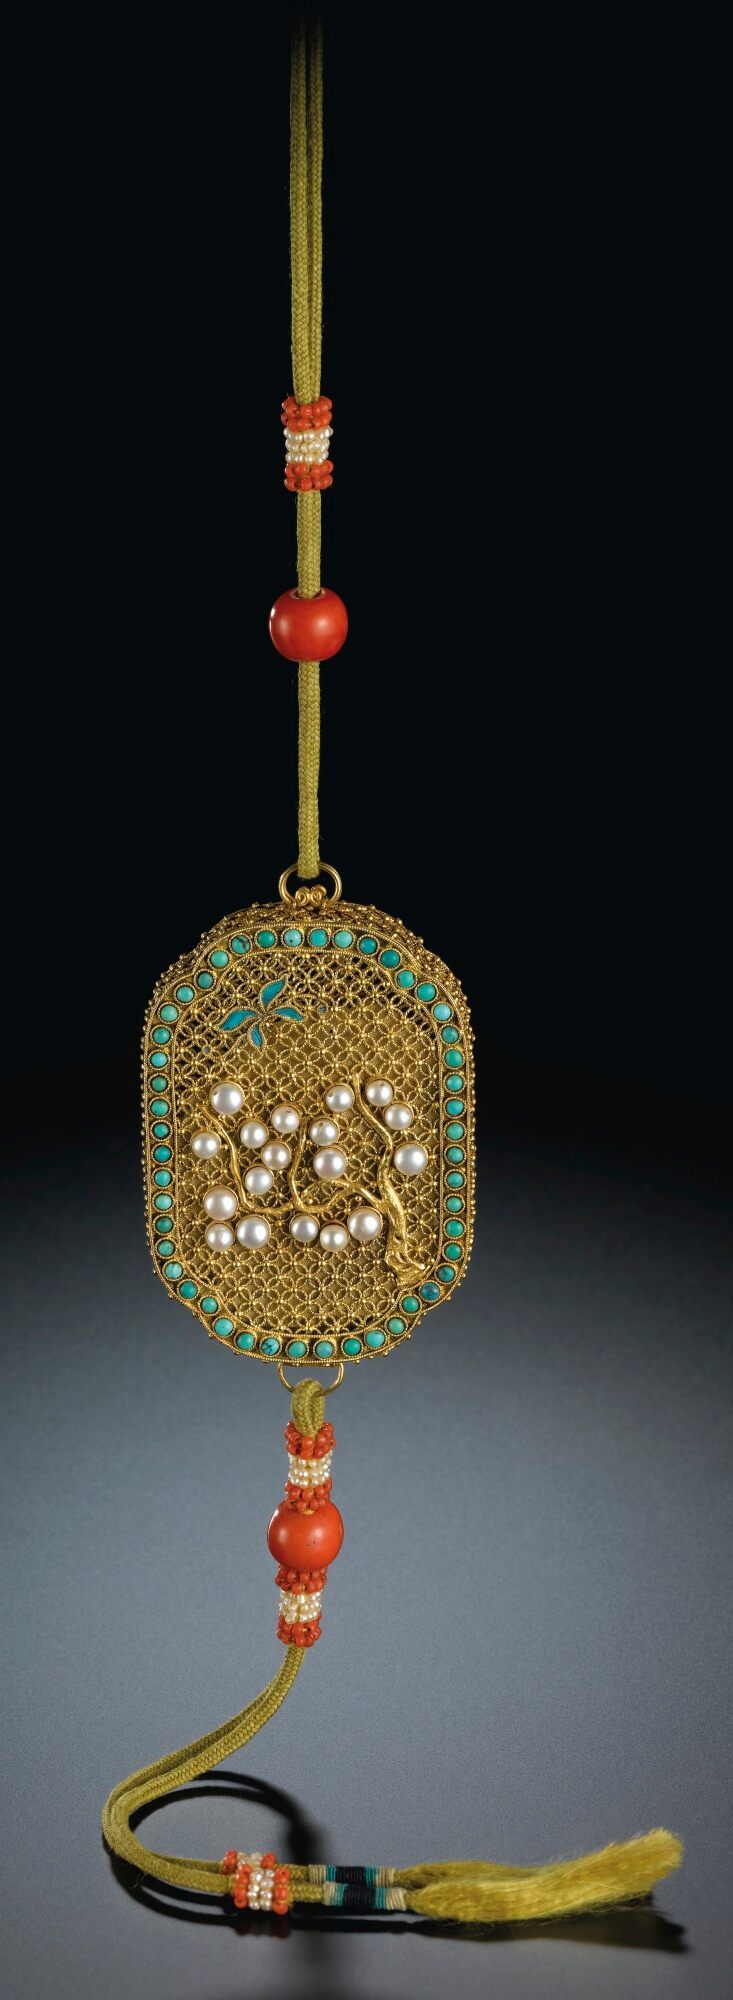 3022 清十八世紀末 / 十九世紀初 金累絲嵌珍珠綠松石「蝶舞樹間」蓋盒